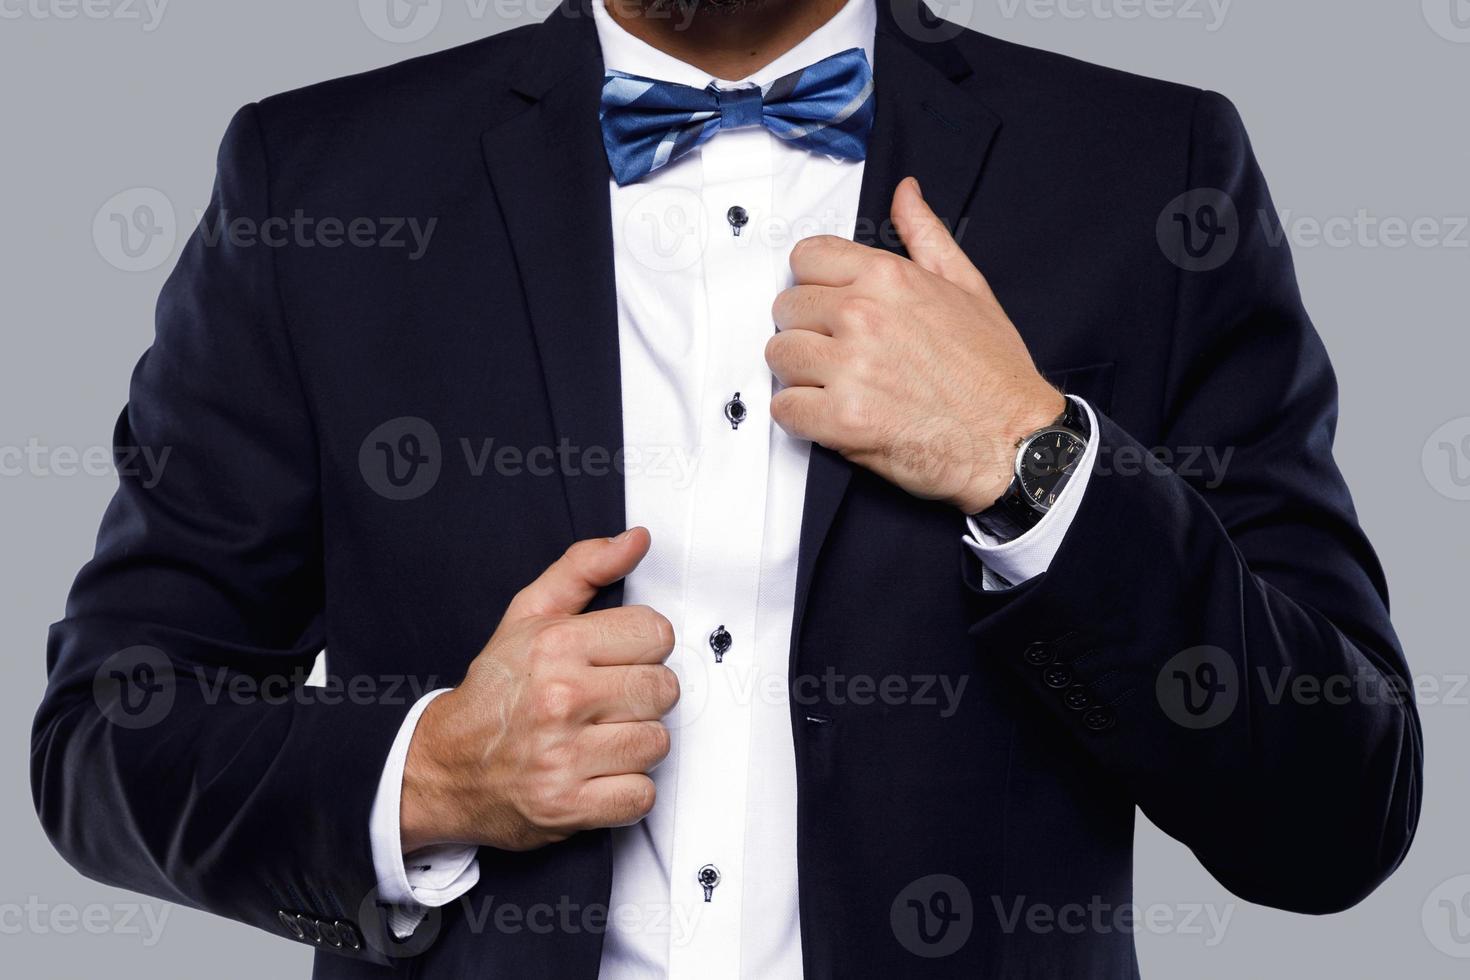 uomo nel Marina Militare blu completo da uomo con arco cravatta foto